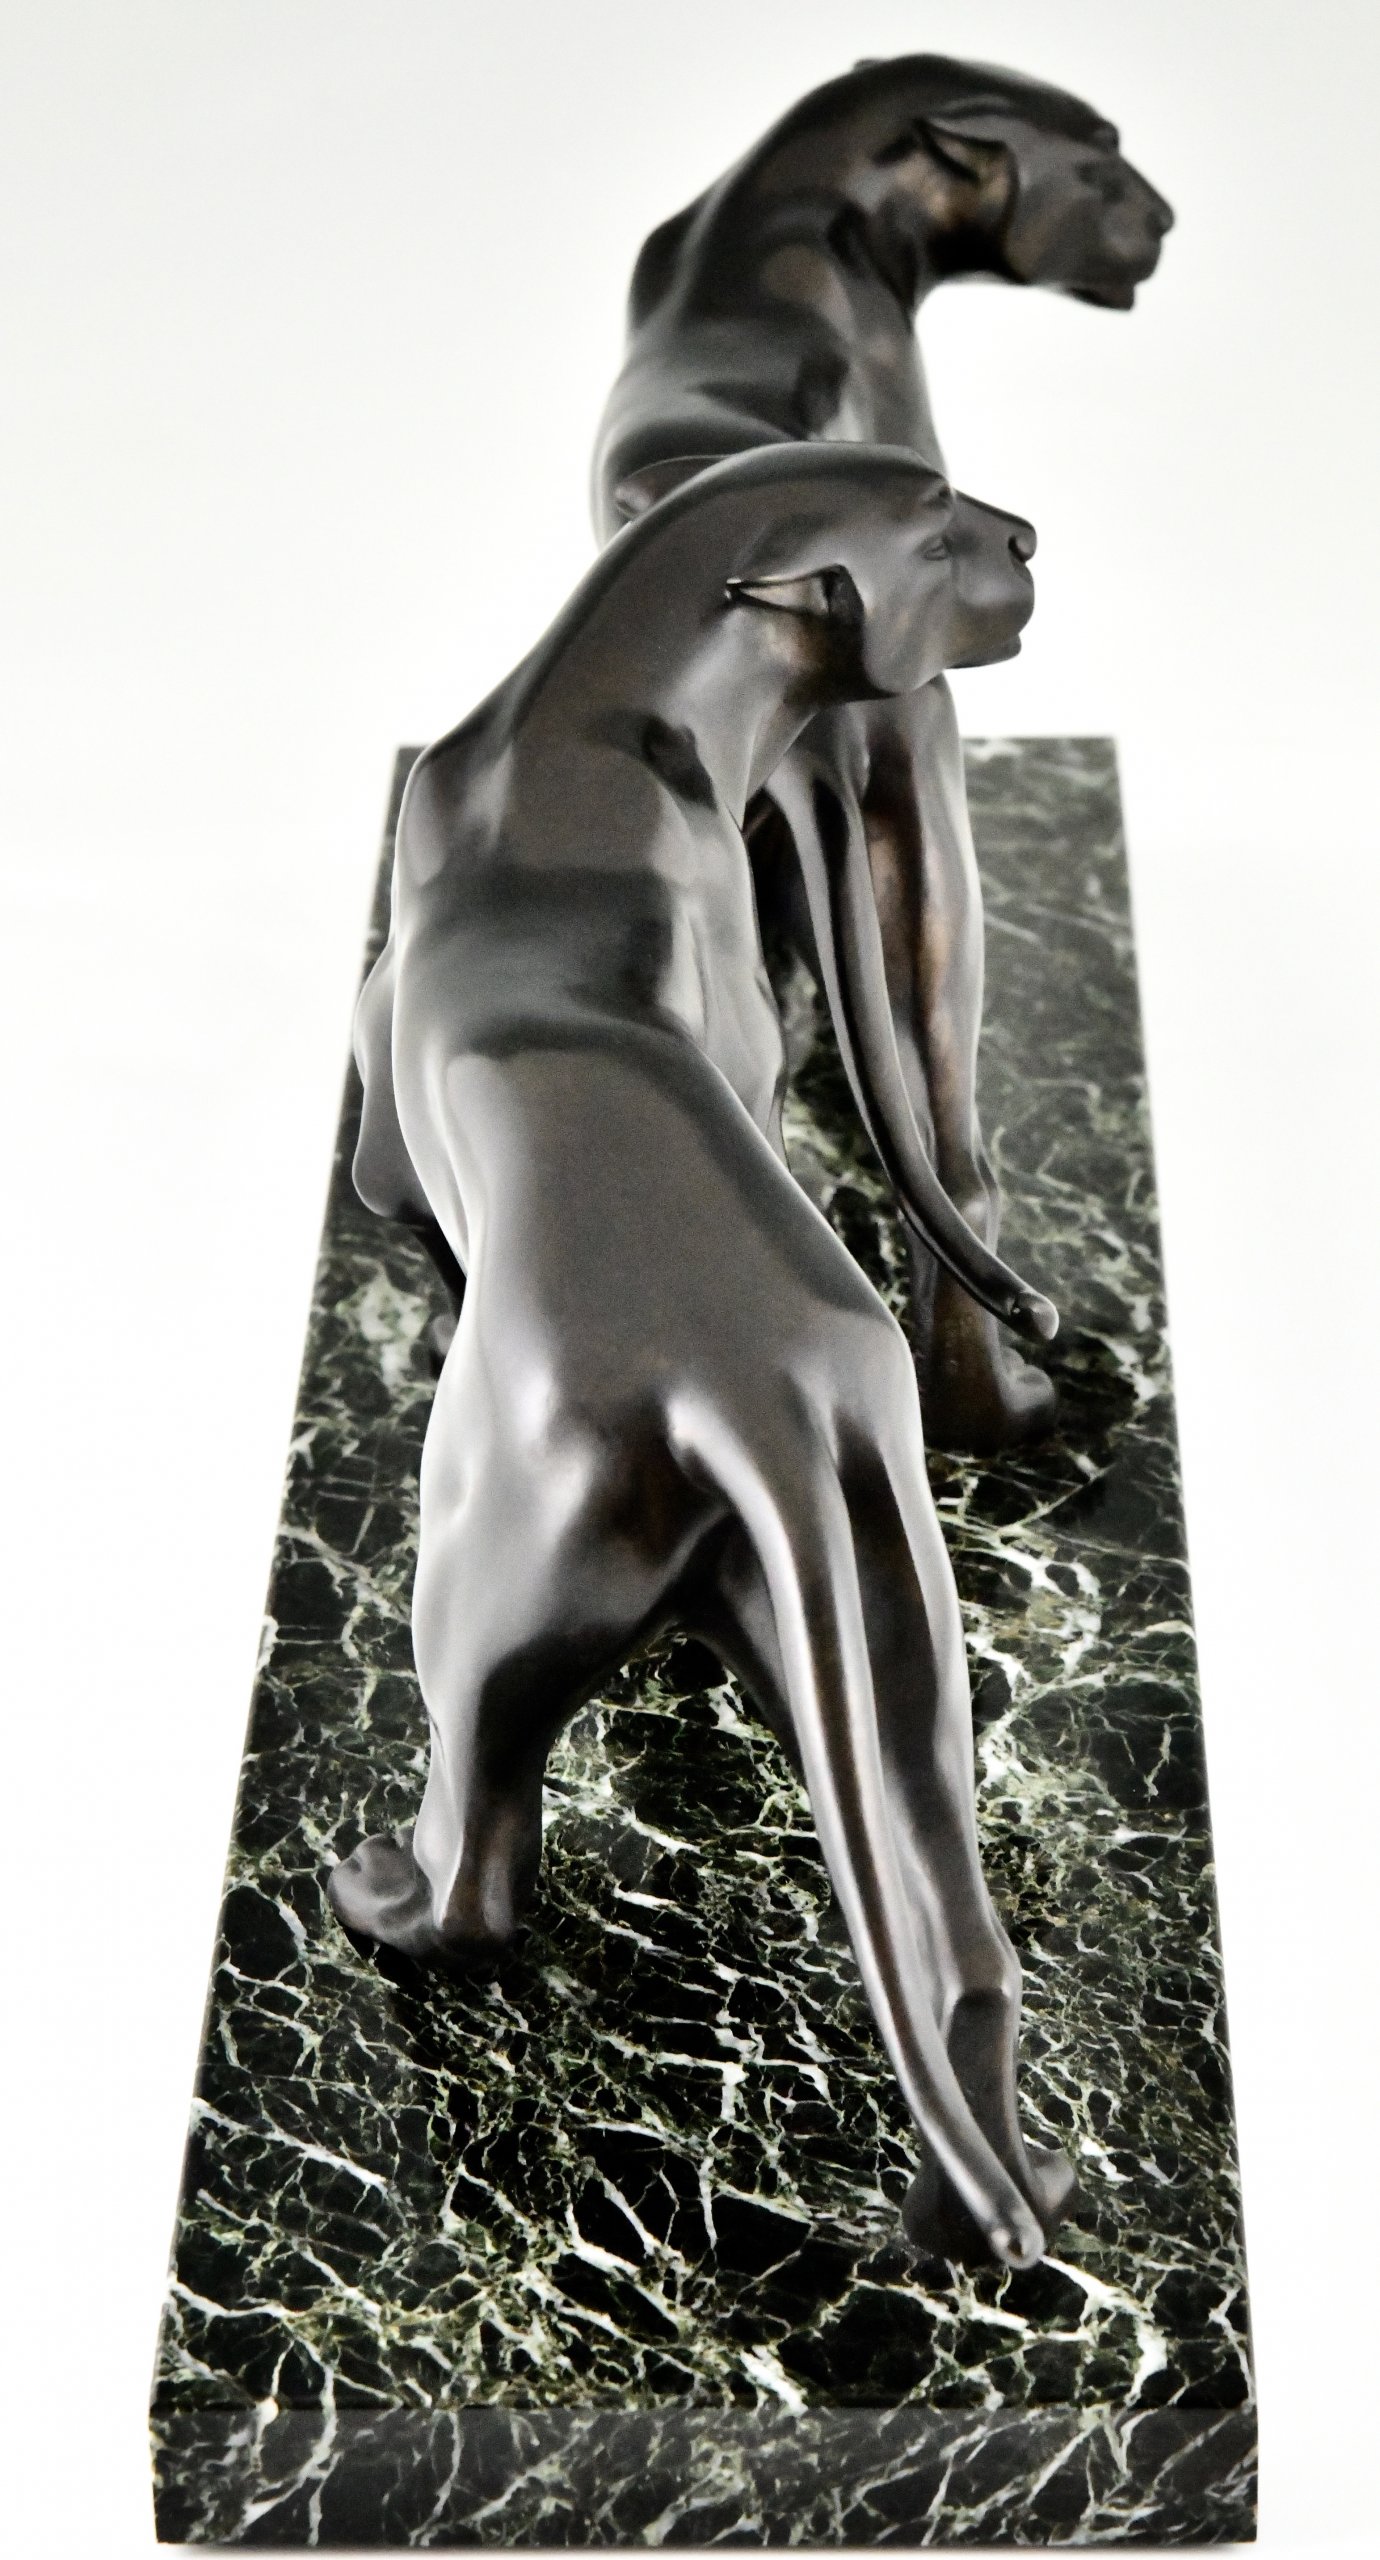 Art Deco bronzen sculptuur twee panters